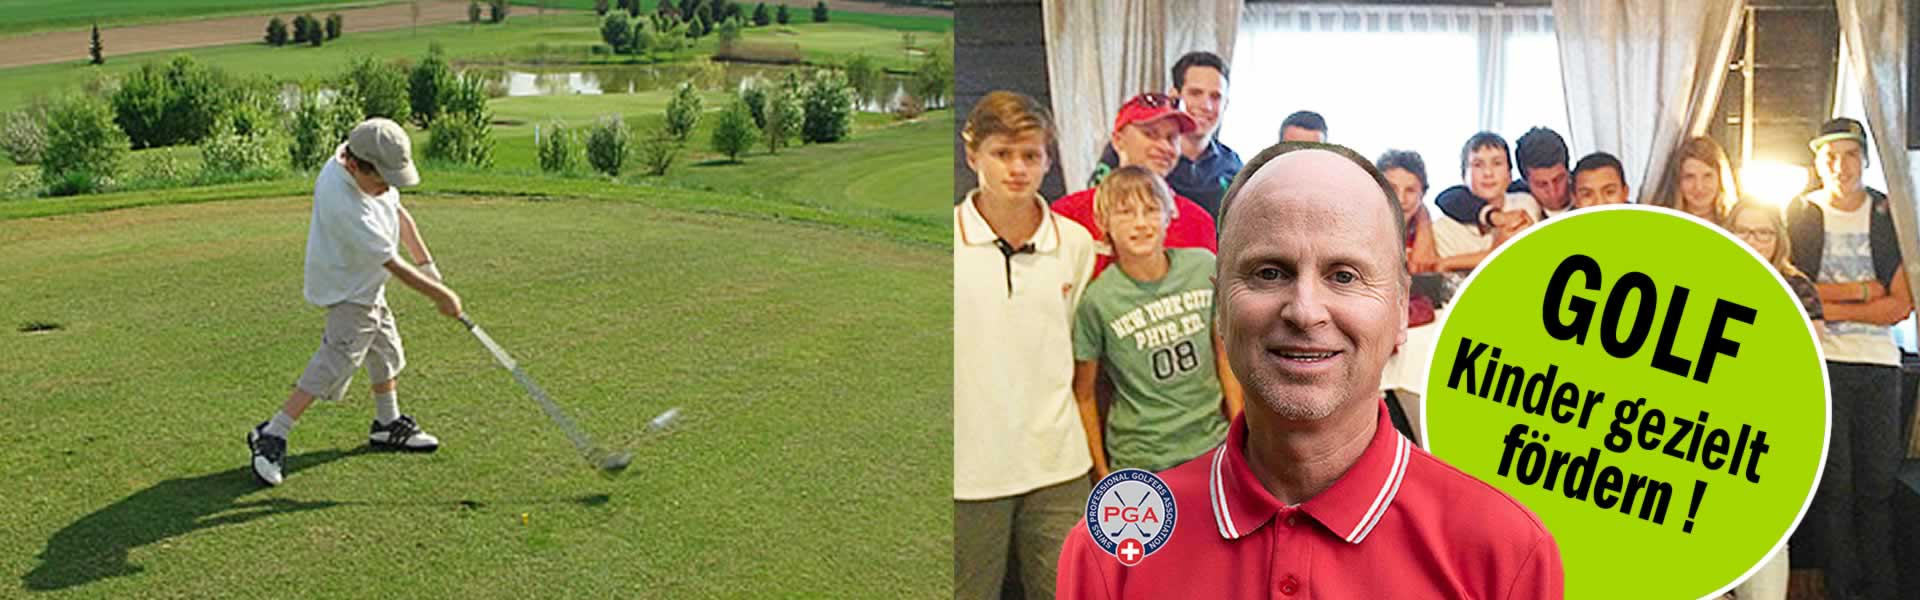 Golf-Junioren-Kinder-Zuerich-Golflehrer-Stunden-Golf-Pro-Thierry-Rombaldi-03